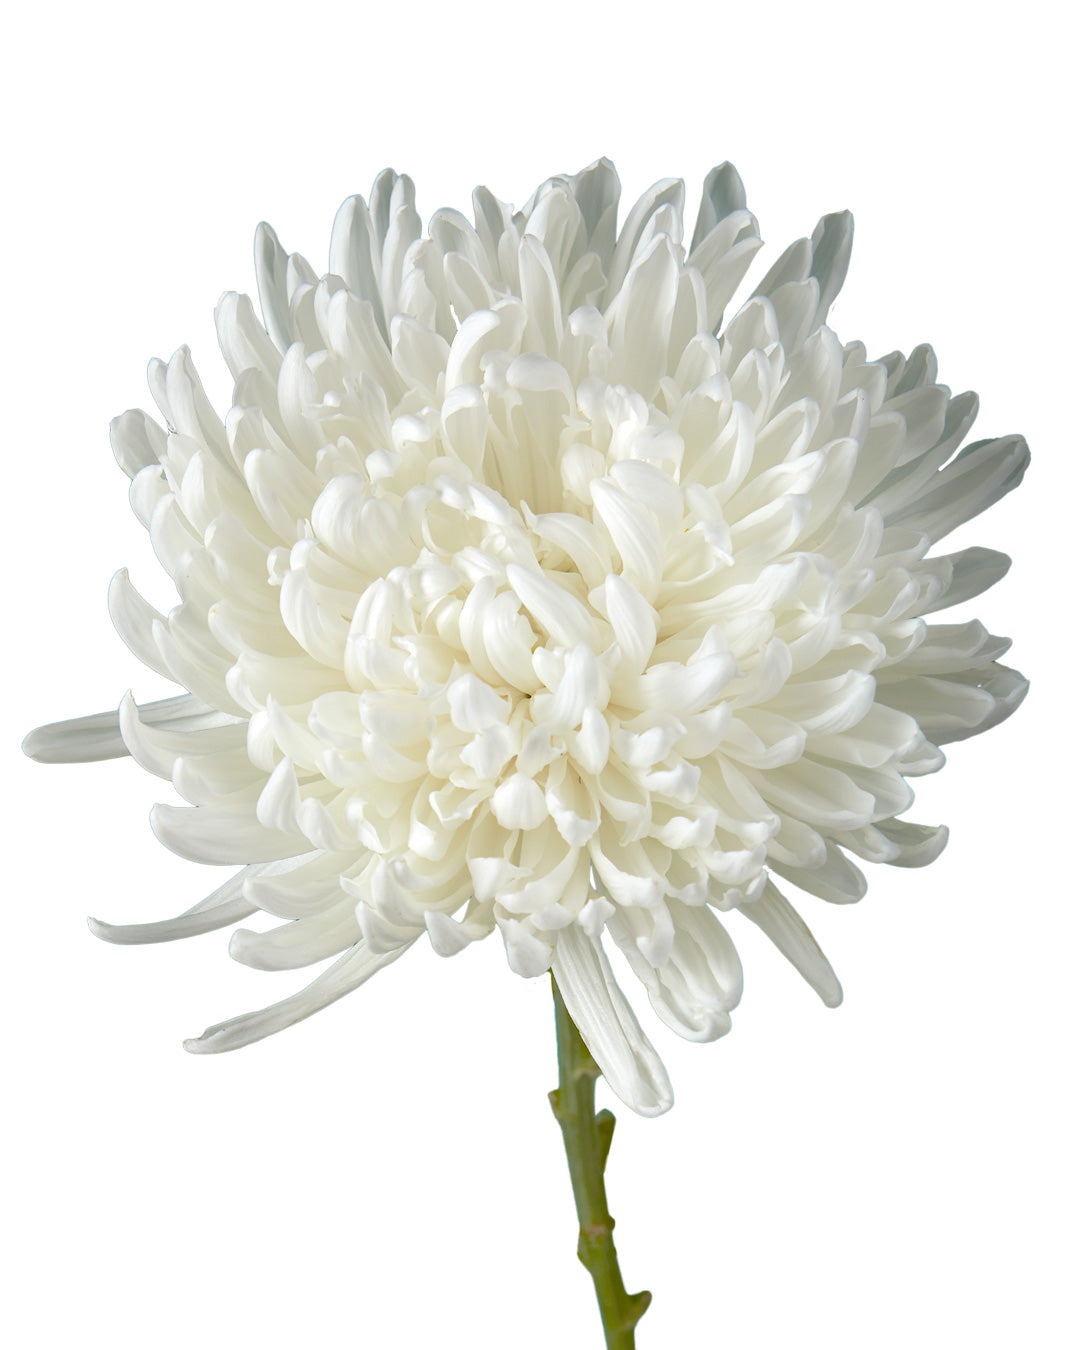 Gargarin Cremon Chrysanthemum